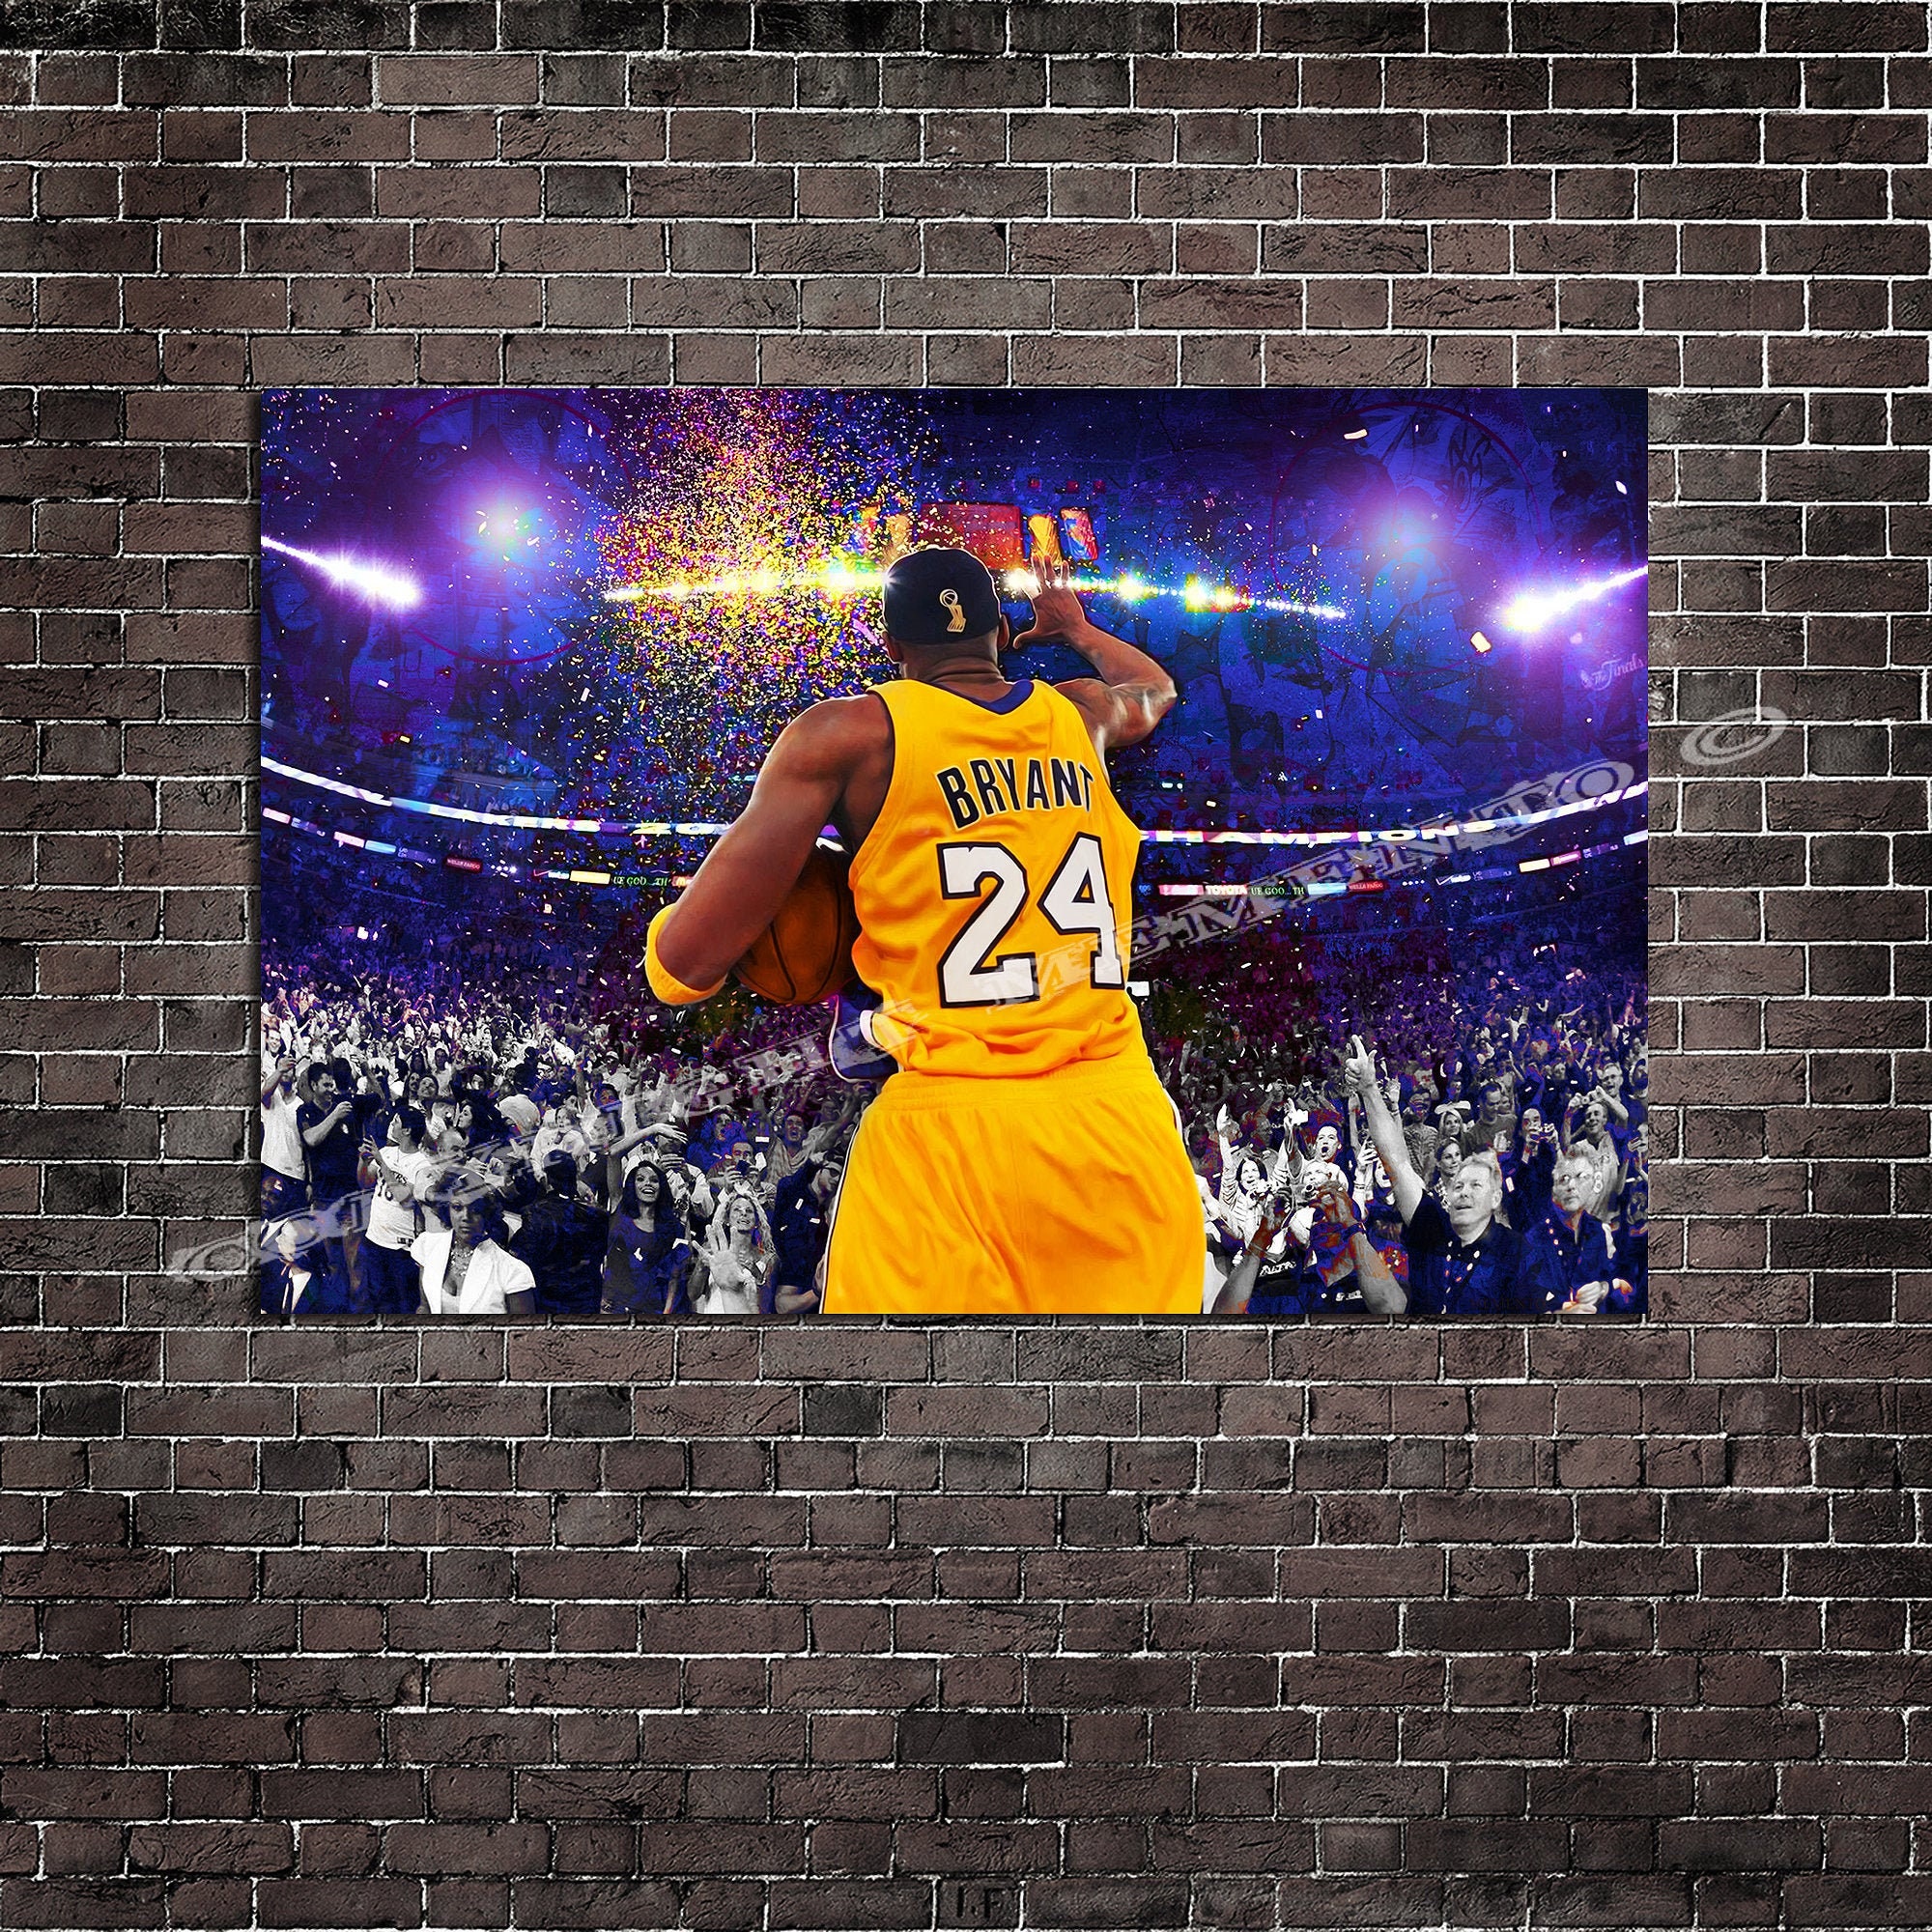 Kobe Bryant #8 - Memento 